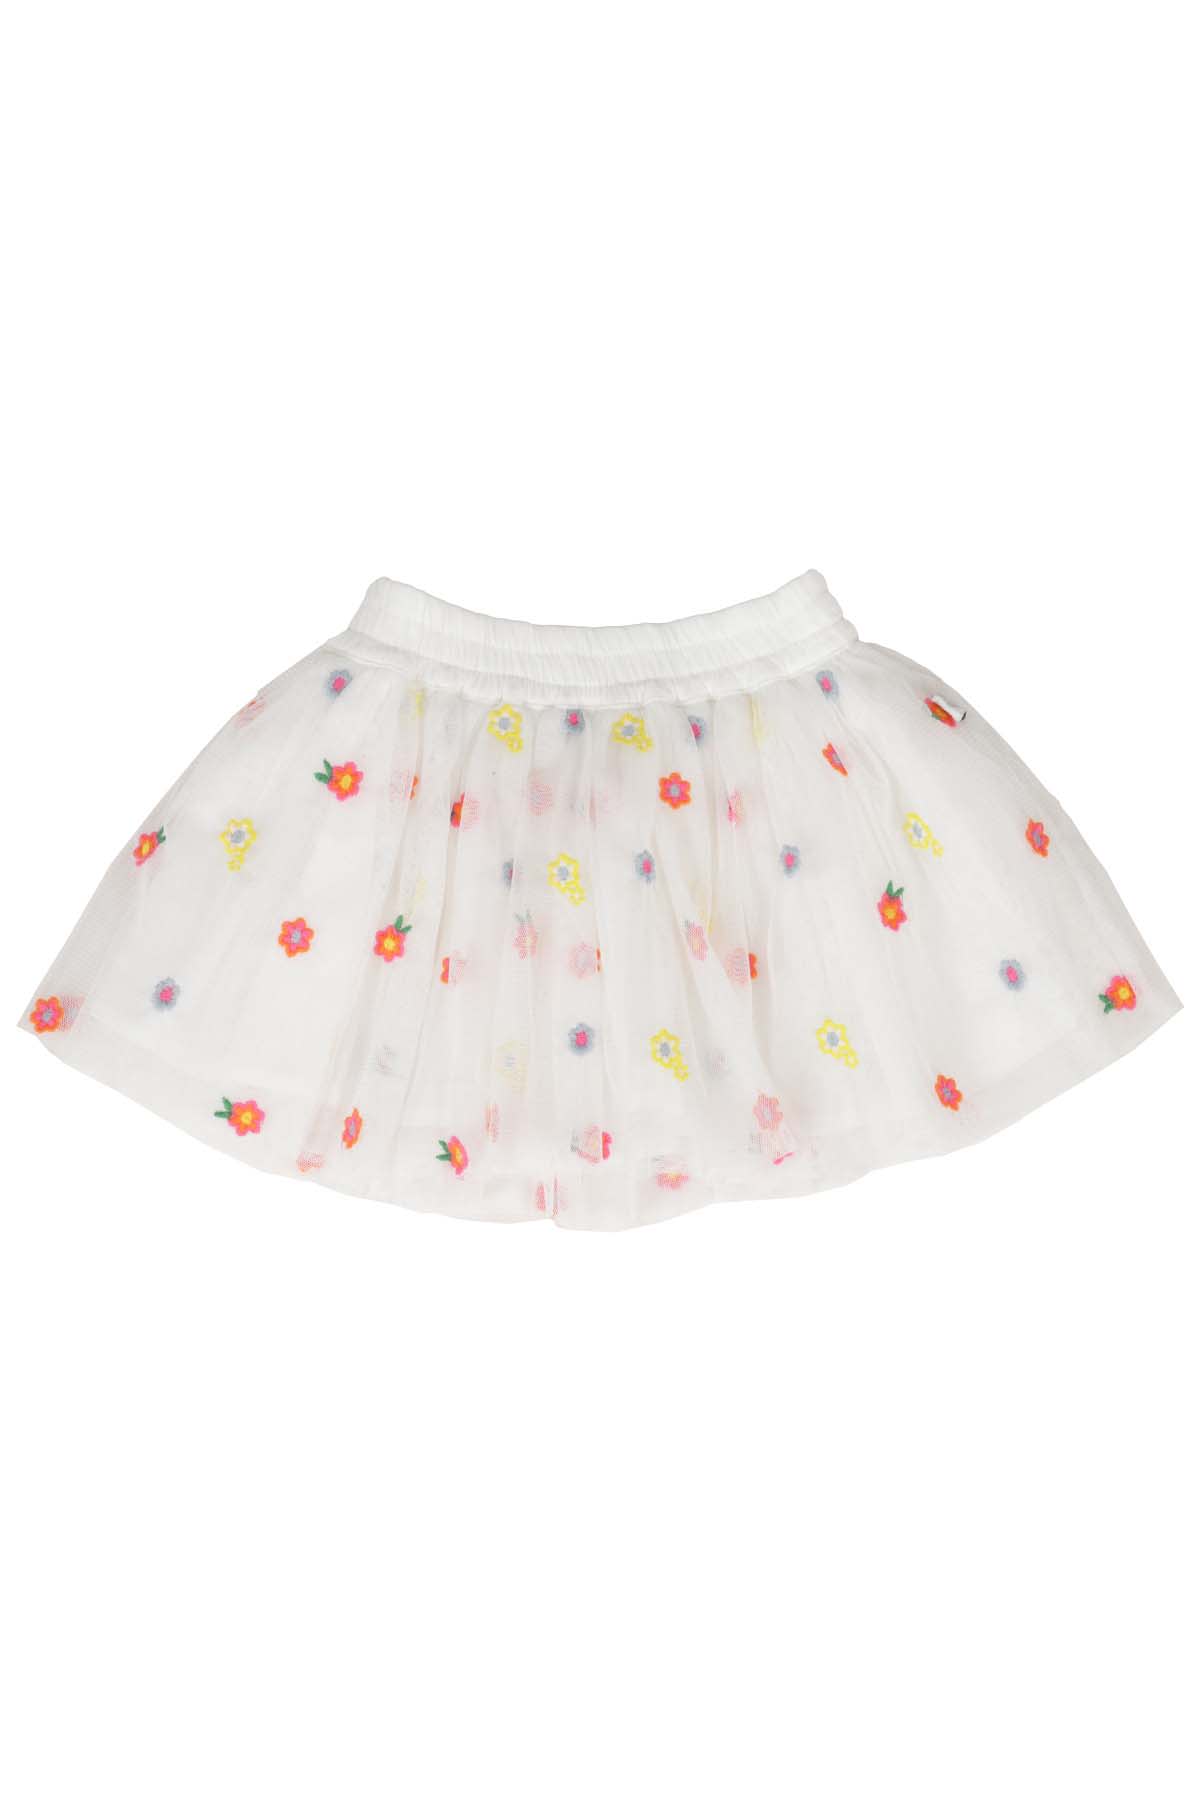 Stella Mccartney Kids' Skirt In Em Avorio